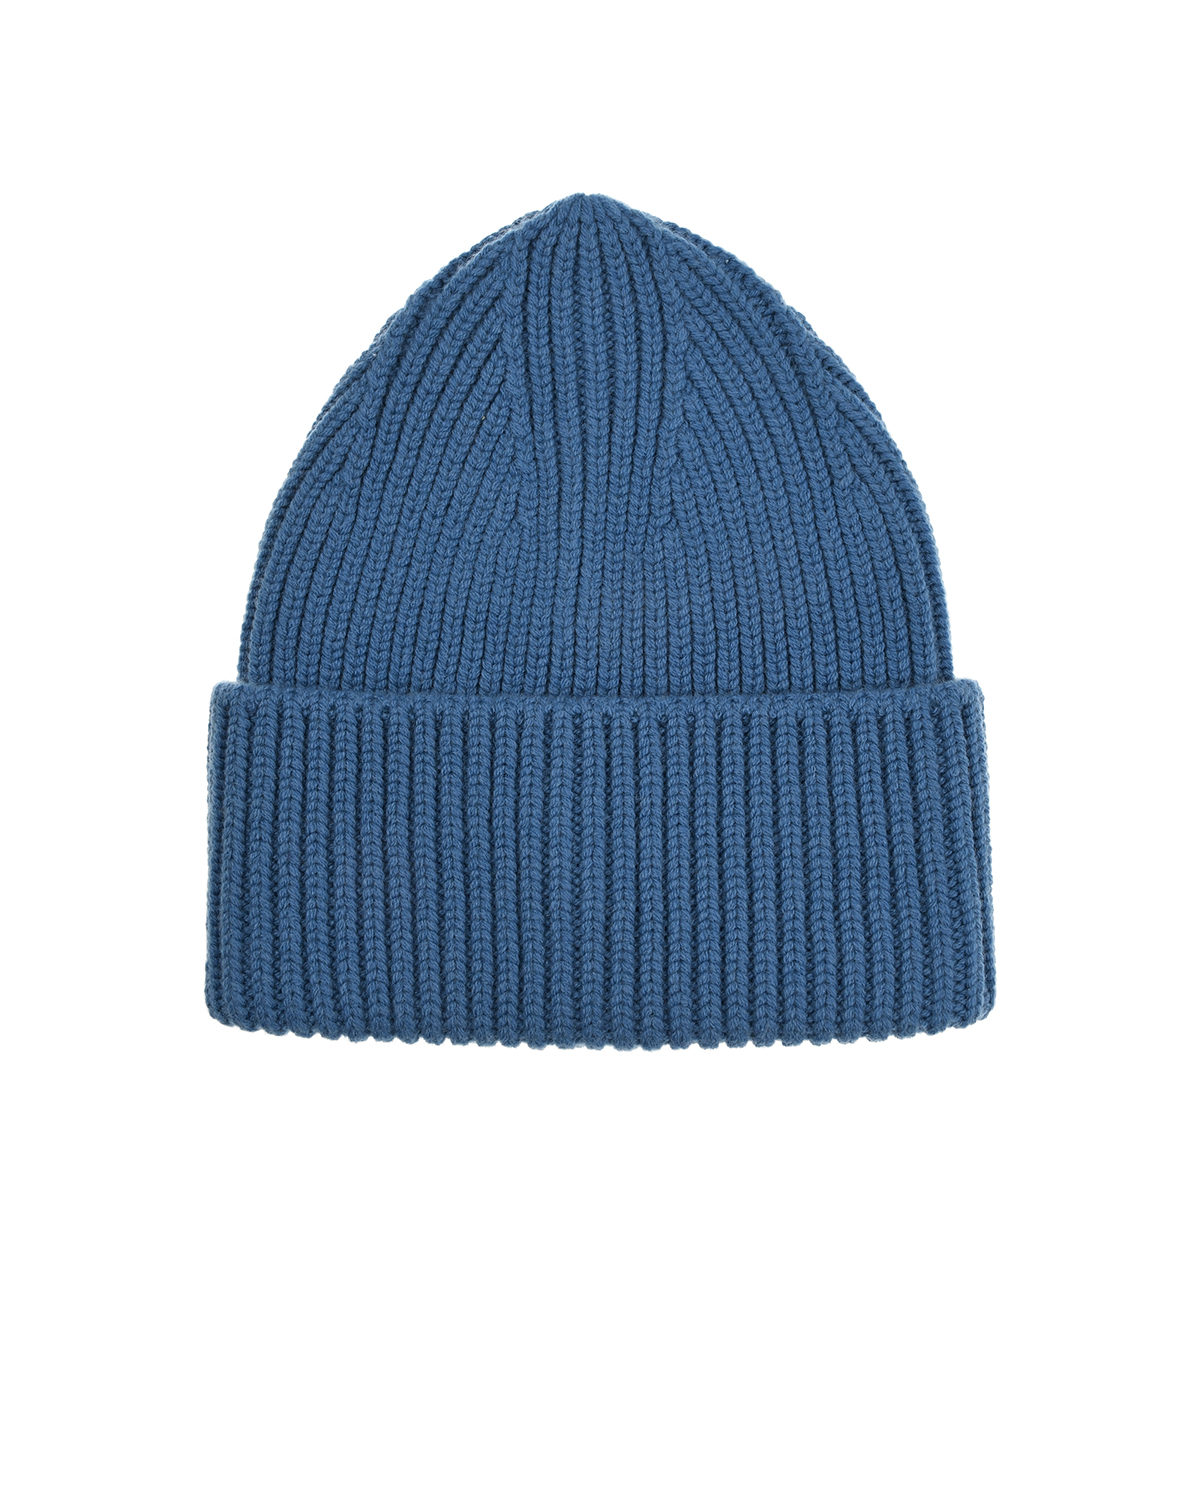 Голубая шапка бини из шерсти и кашемира MRZ, размер unica, цвет голубой